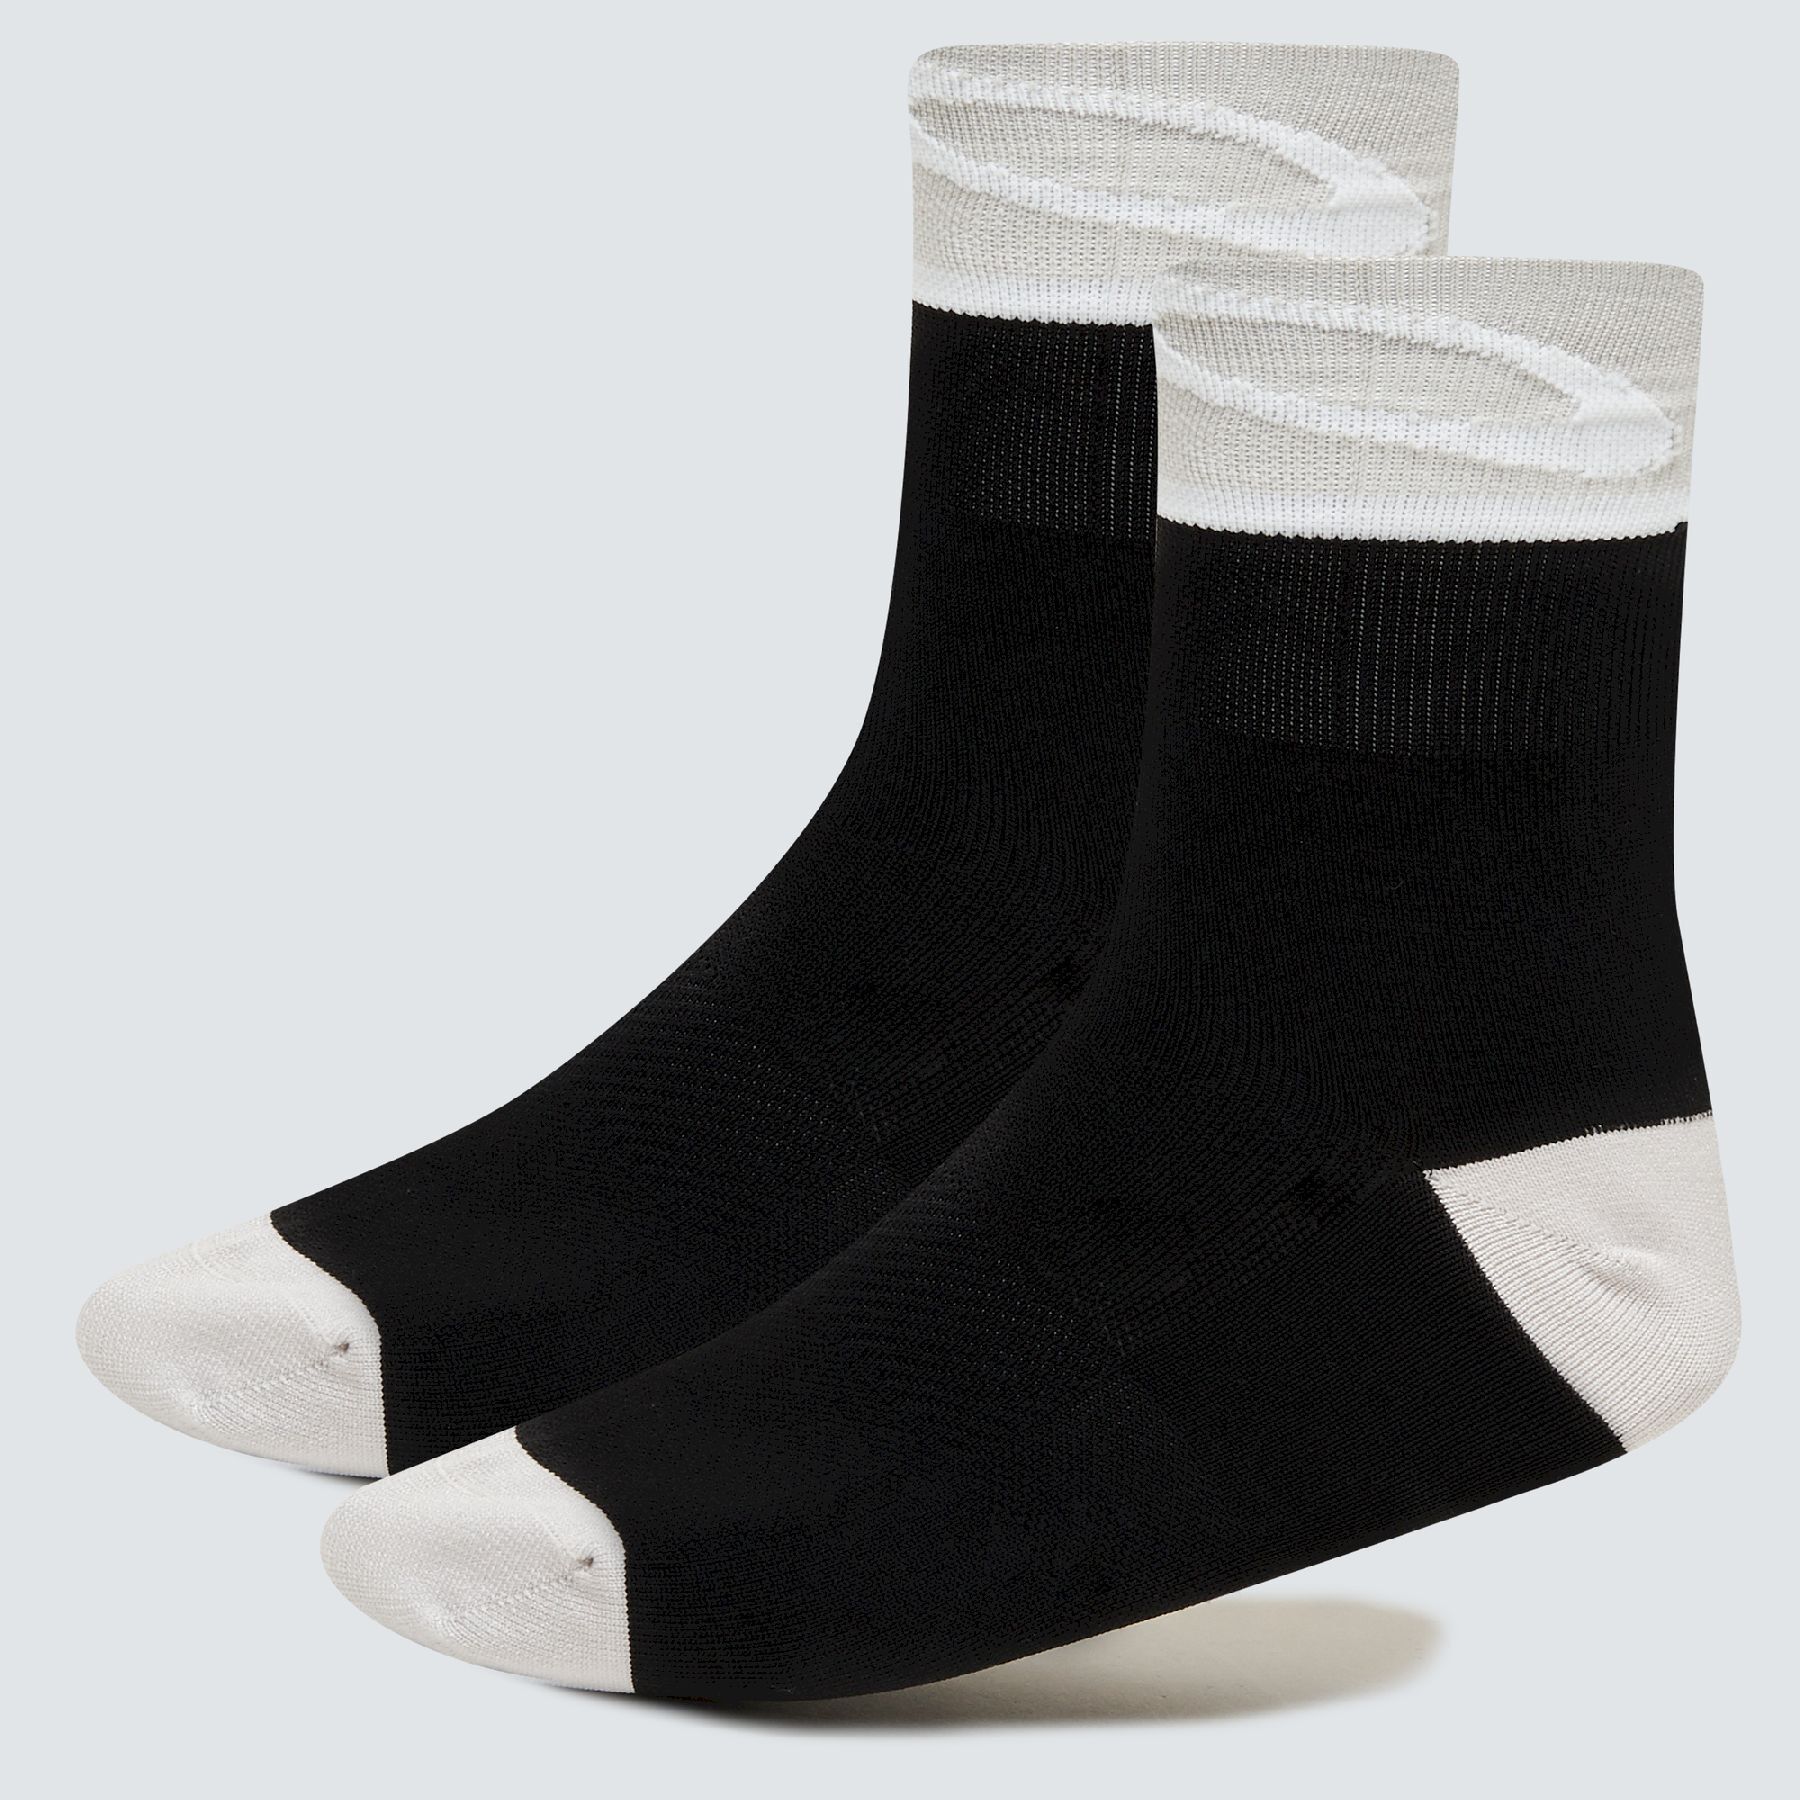 Oakley Socks 3.0 - Calze